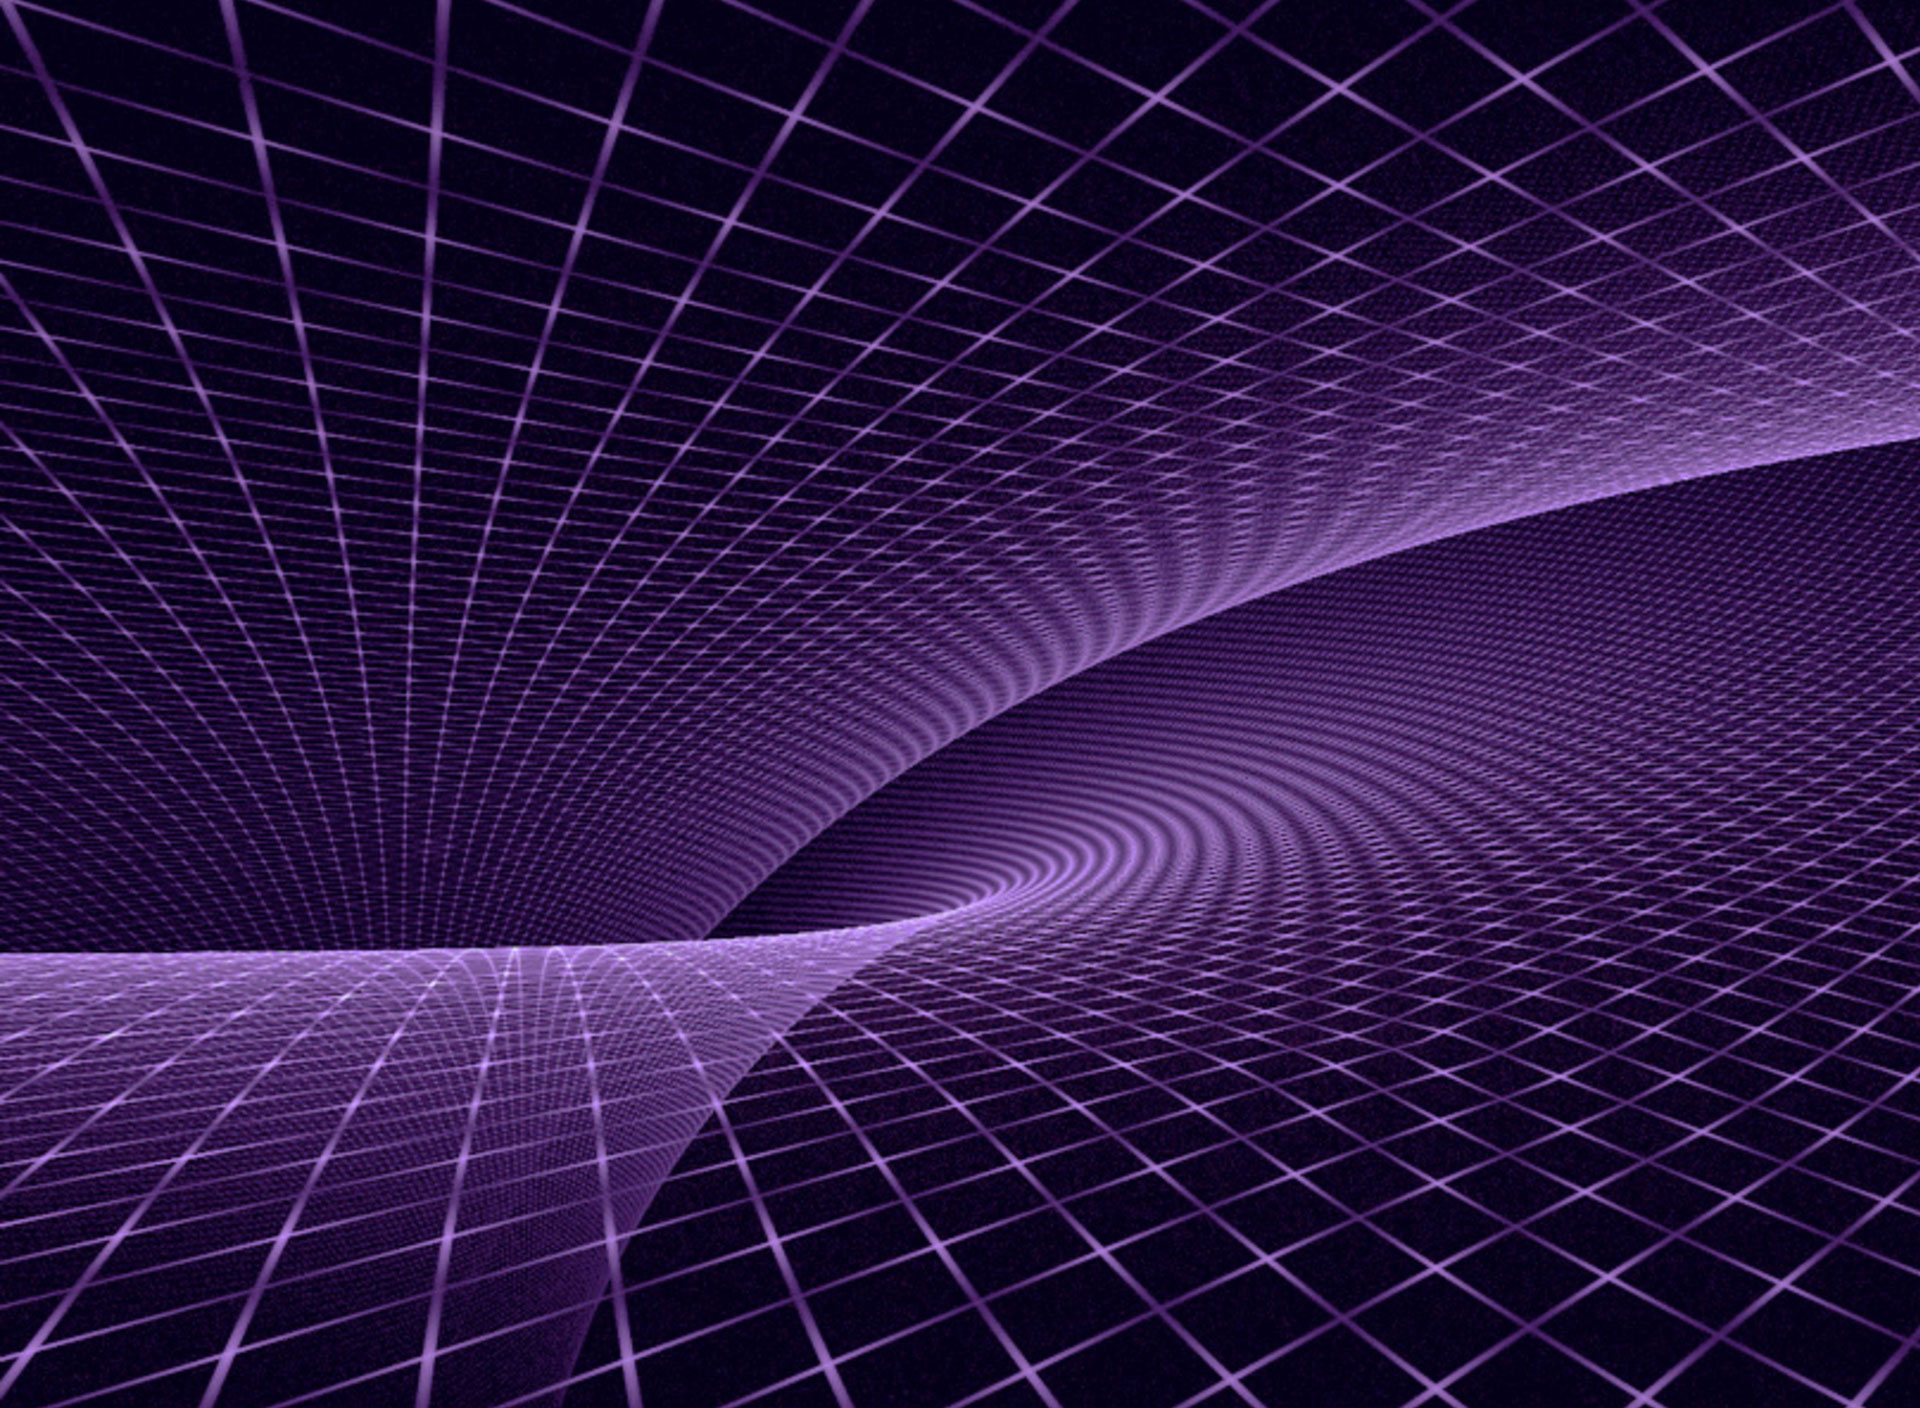 Asus Eee Pad Slider Purple Fractal Wallpaper